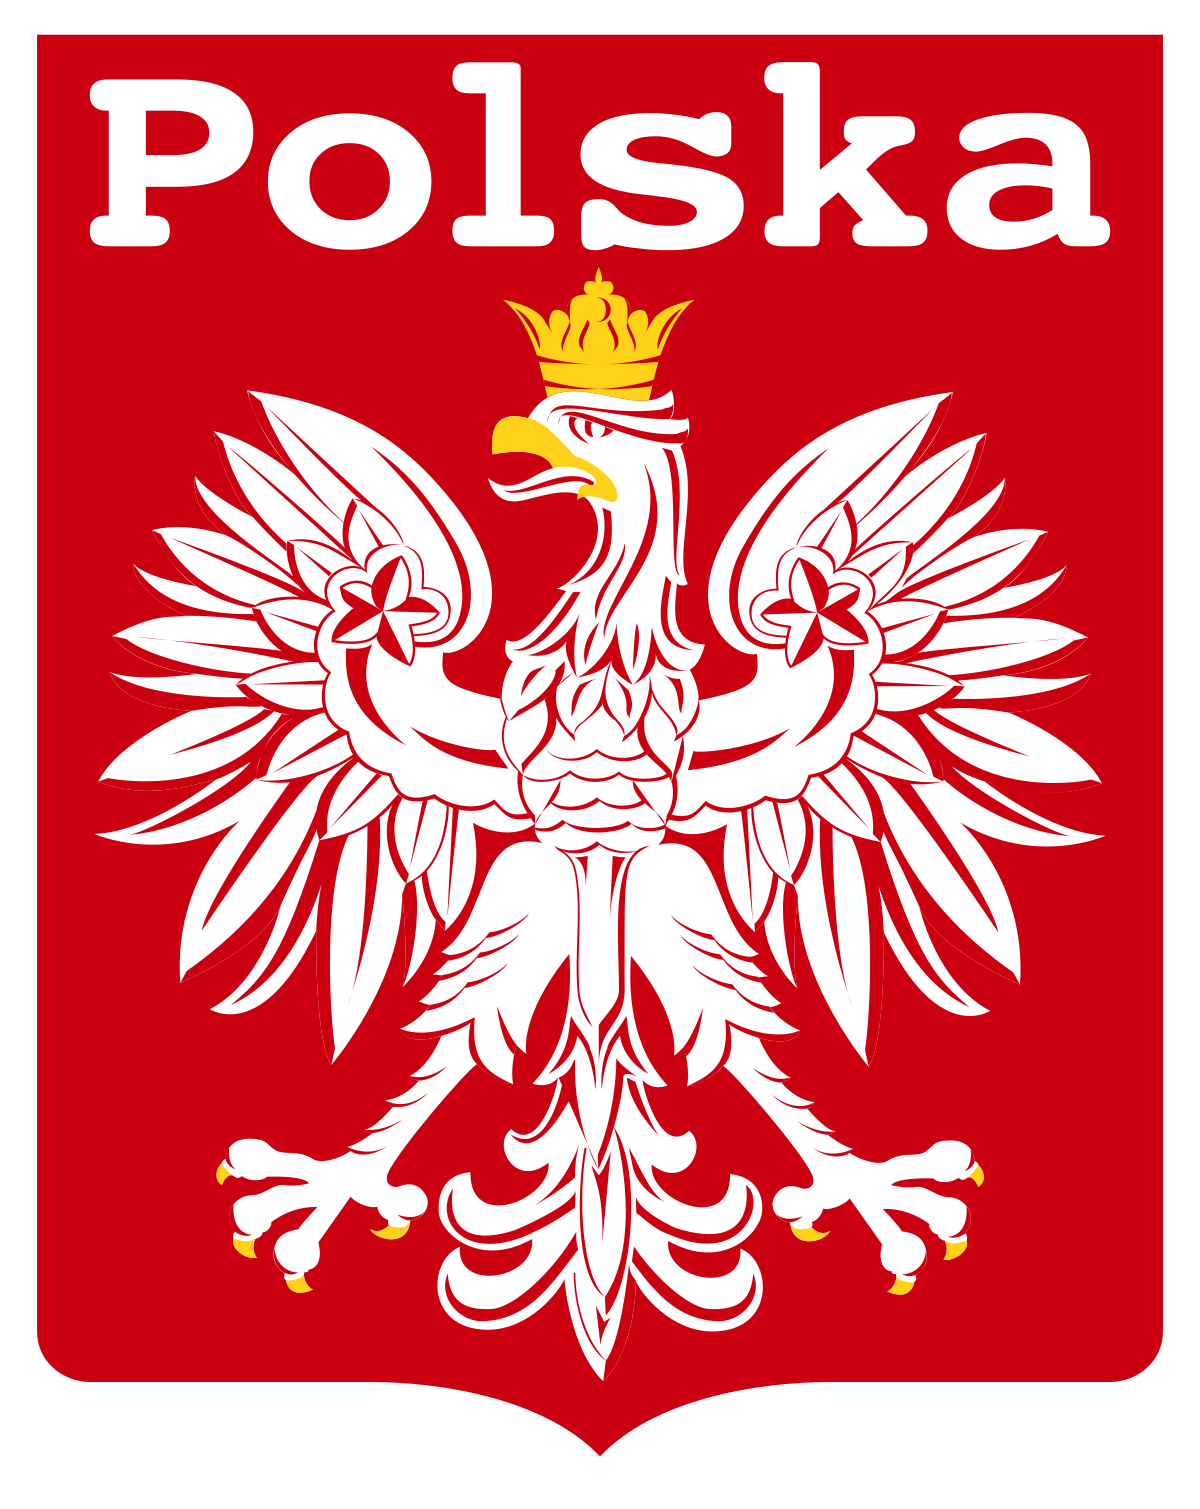 Польша флаг и герб. Польская эмблема. Логотип сборной Польши. Символы Польши.